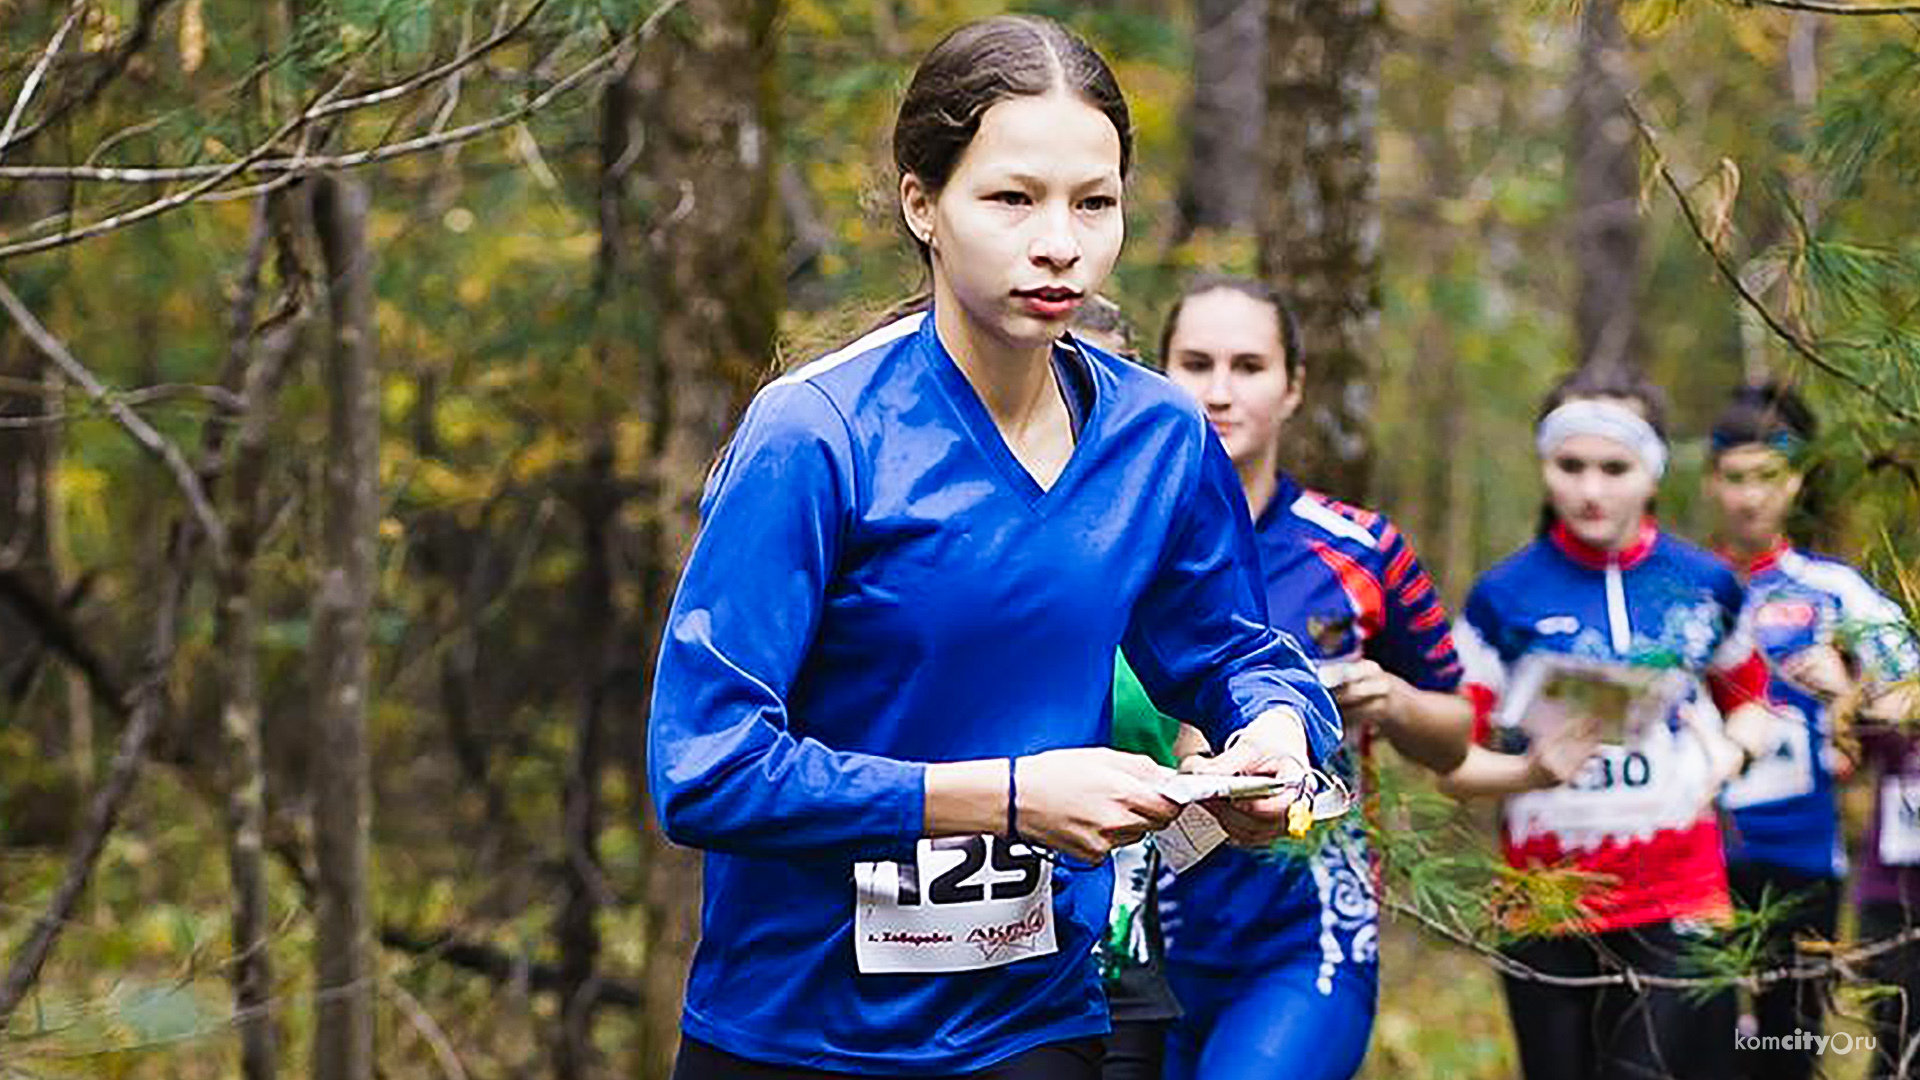 Юные спортсмены из Комсомольска-на-Амуре завоевали четыре золотых и одну серебряную награды на всероссийских соревнованиях по спортивному ориентированию